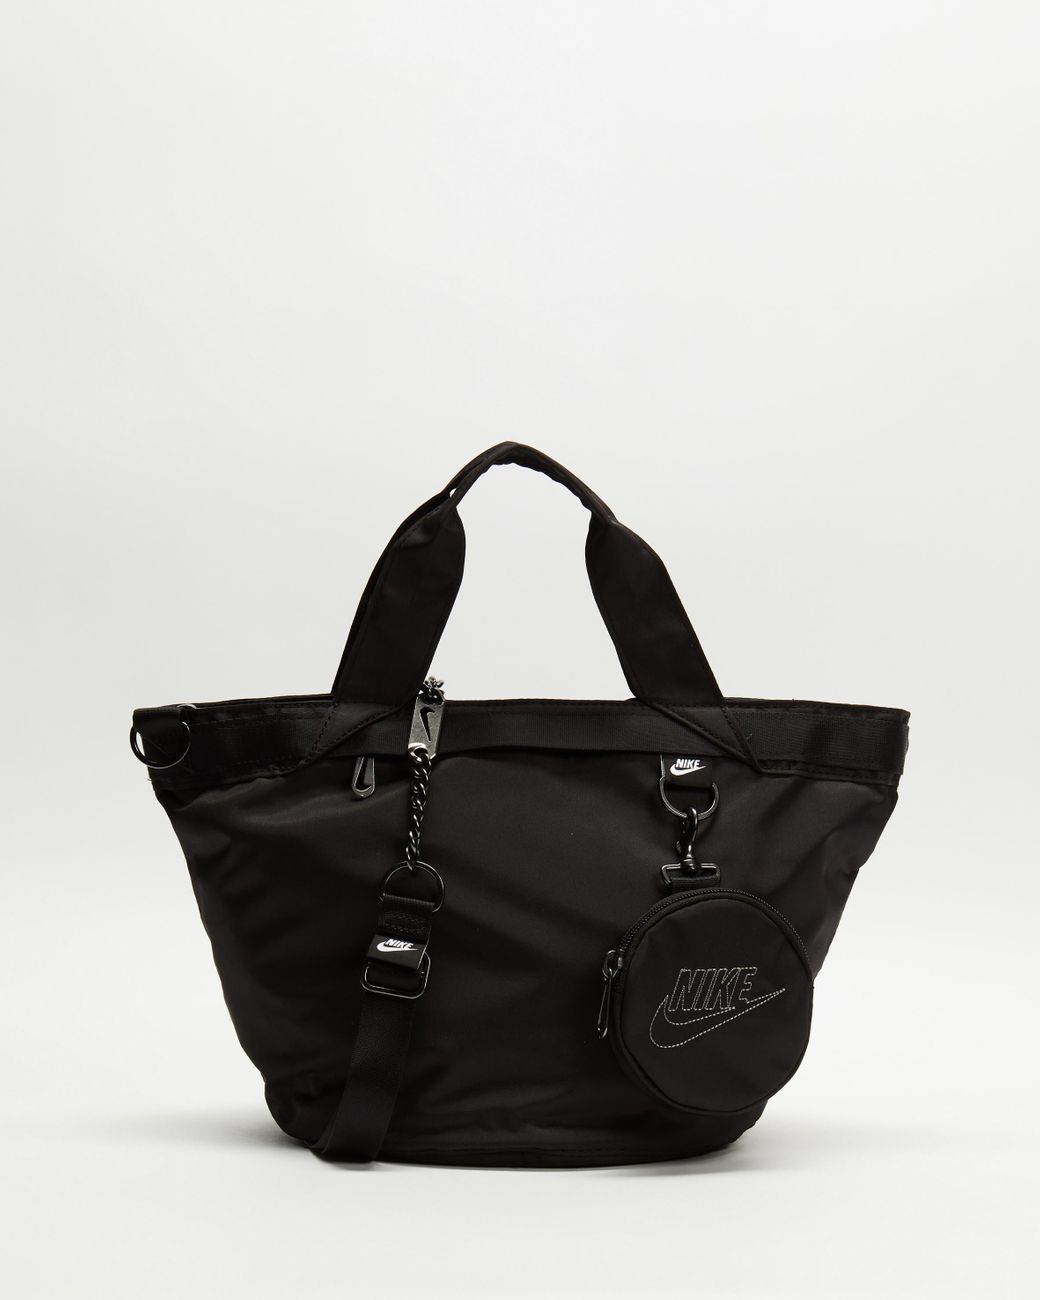 Nike Black Futura Luxe Sportswear Tote Bag